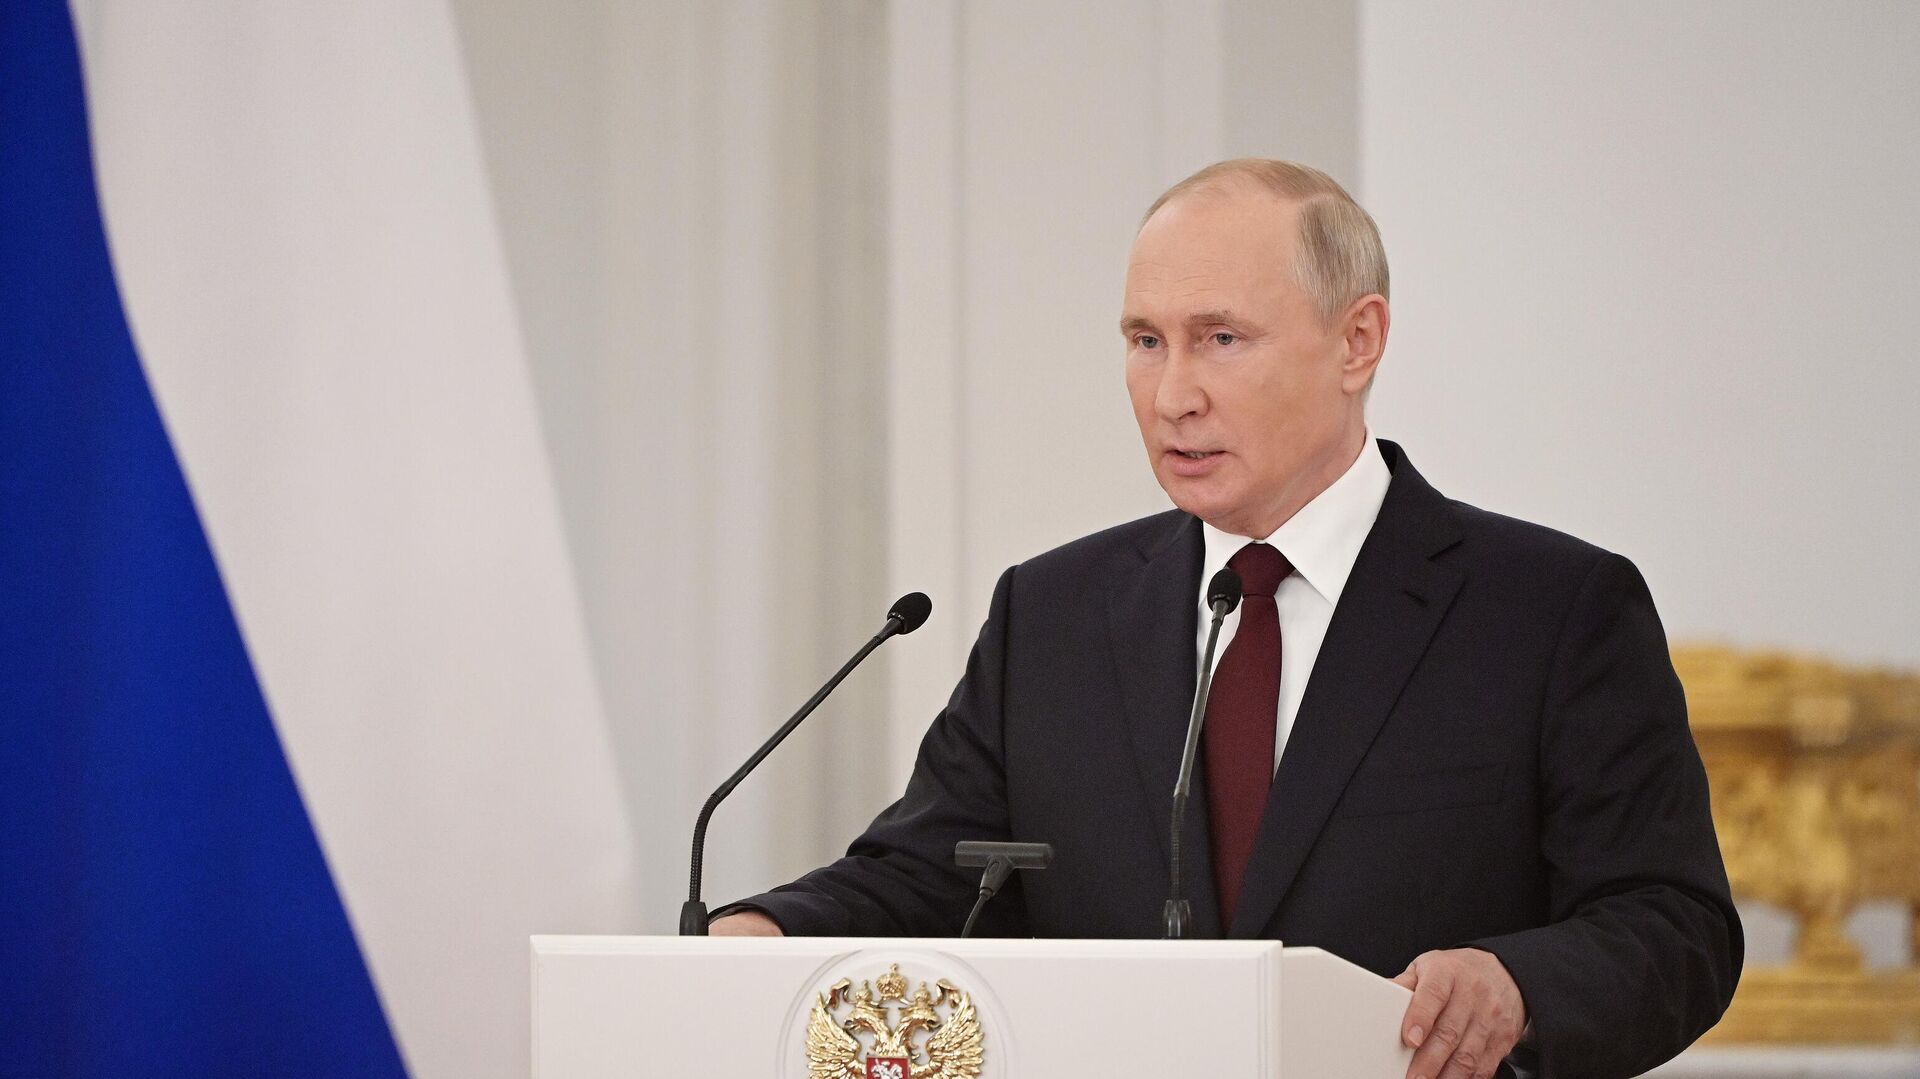 Путин провел совещание по подготовке к прямой линии